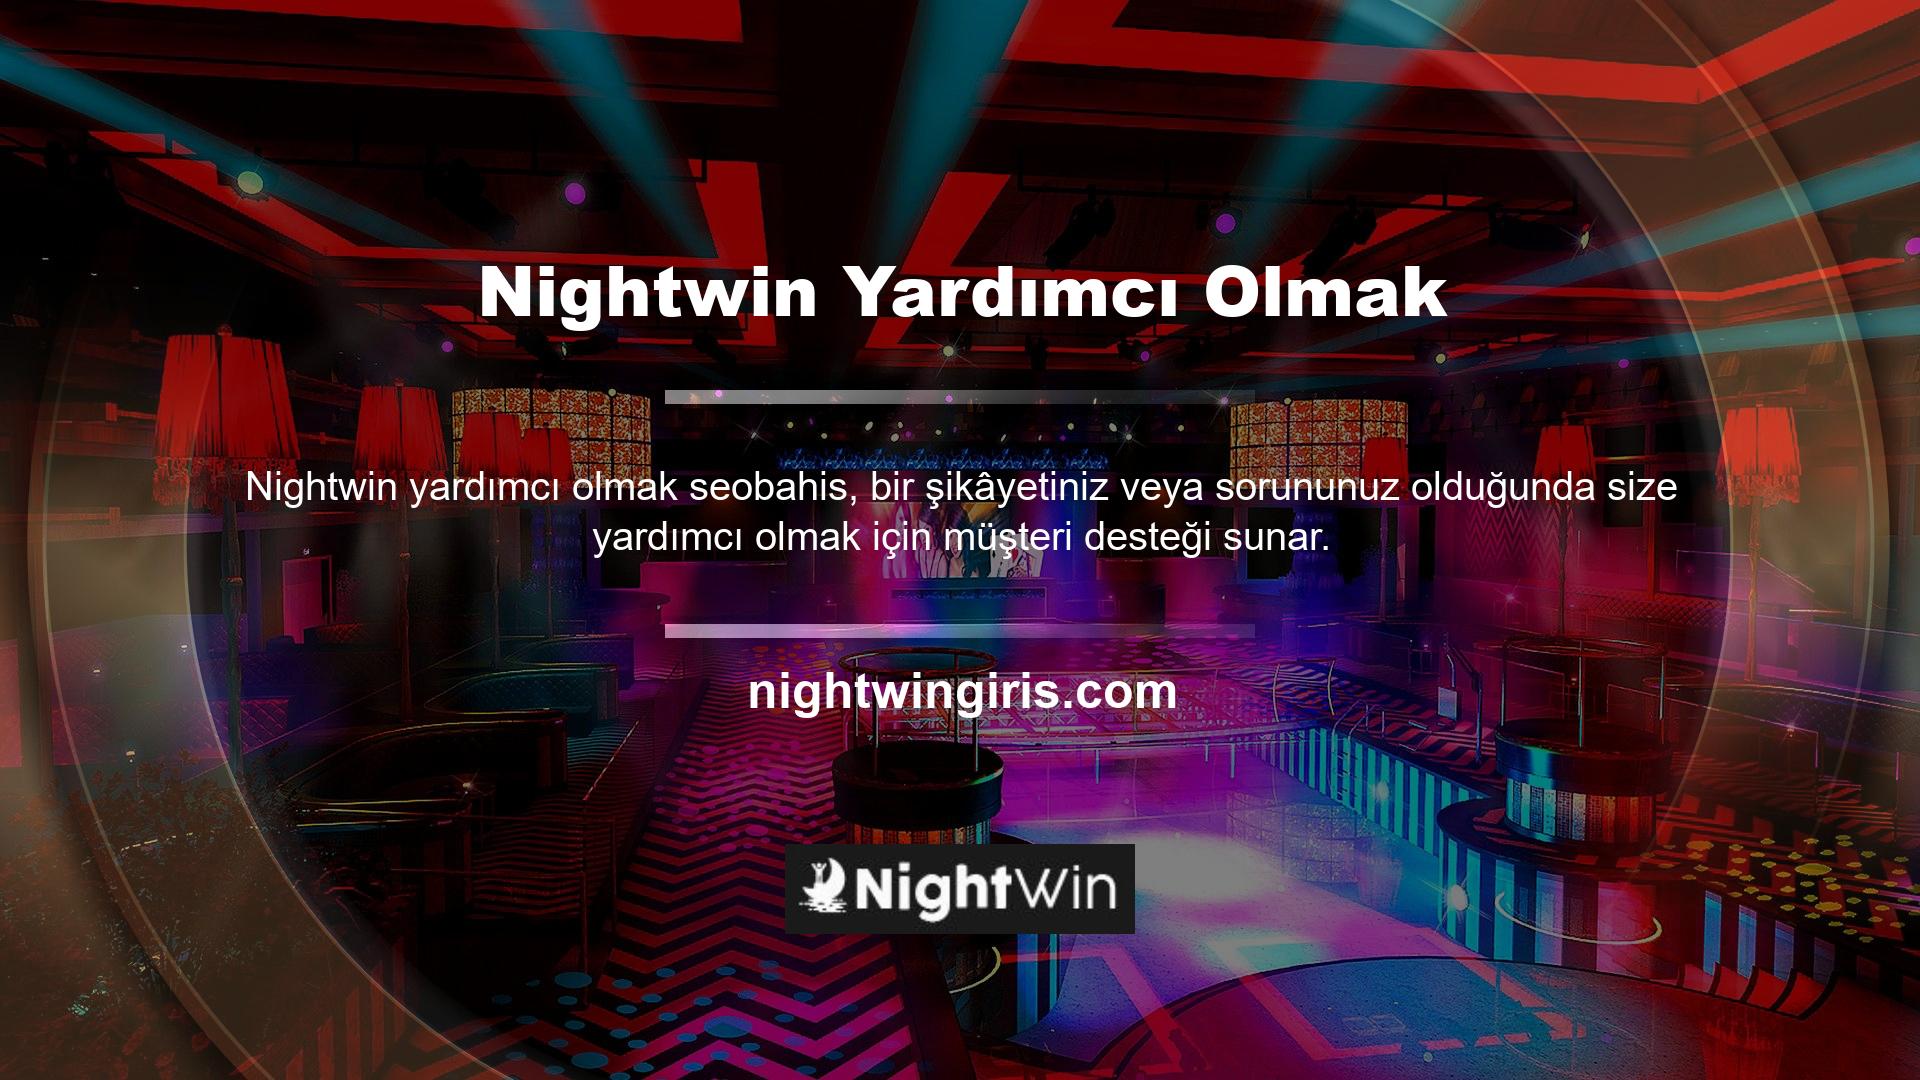 Nightwin her türlü konuda size yardımcı olacak müşteri hizmetleri bulunmaktadır